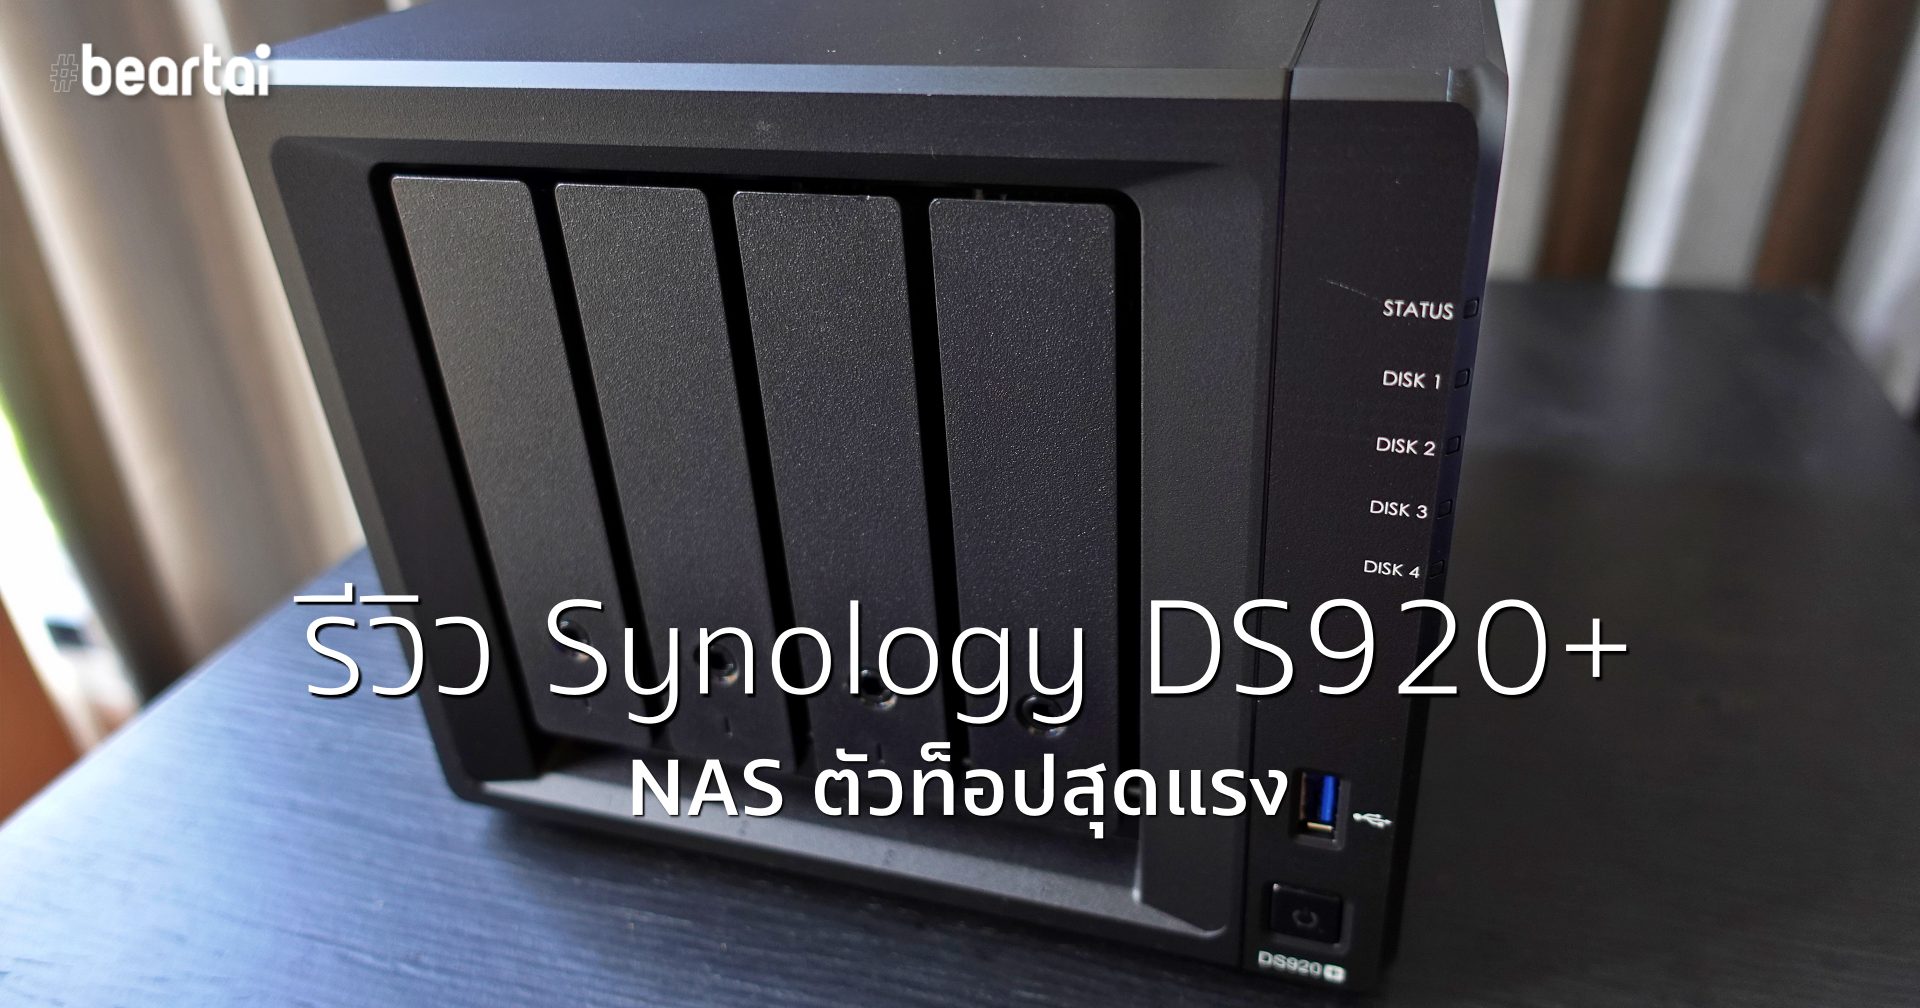 รีวิว Synology DS920+ NAS รุ่นใหญ่สำหรับบ้านและ SME